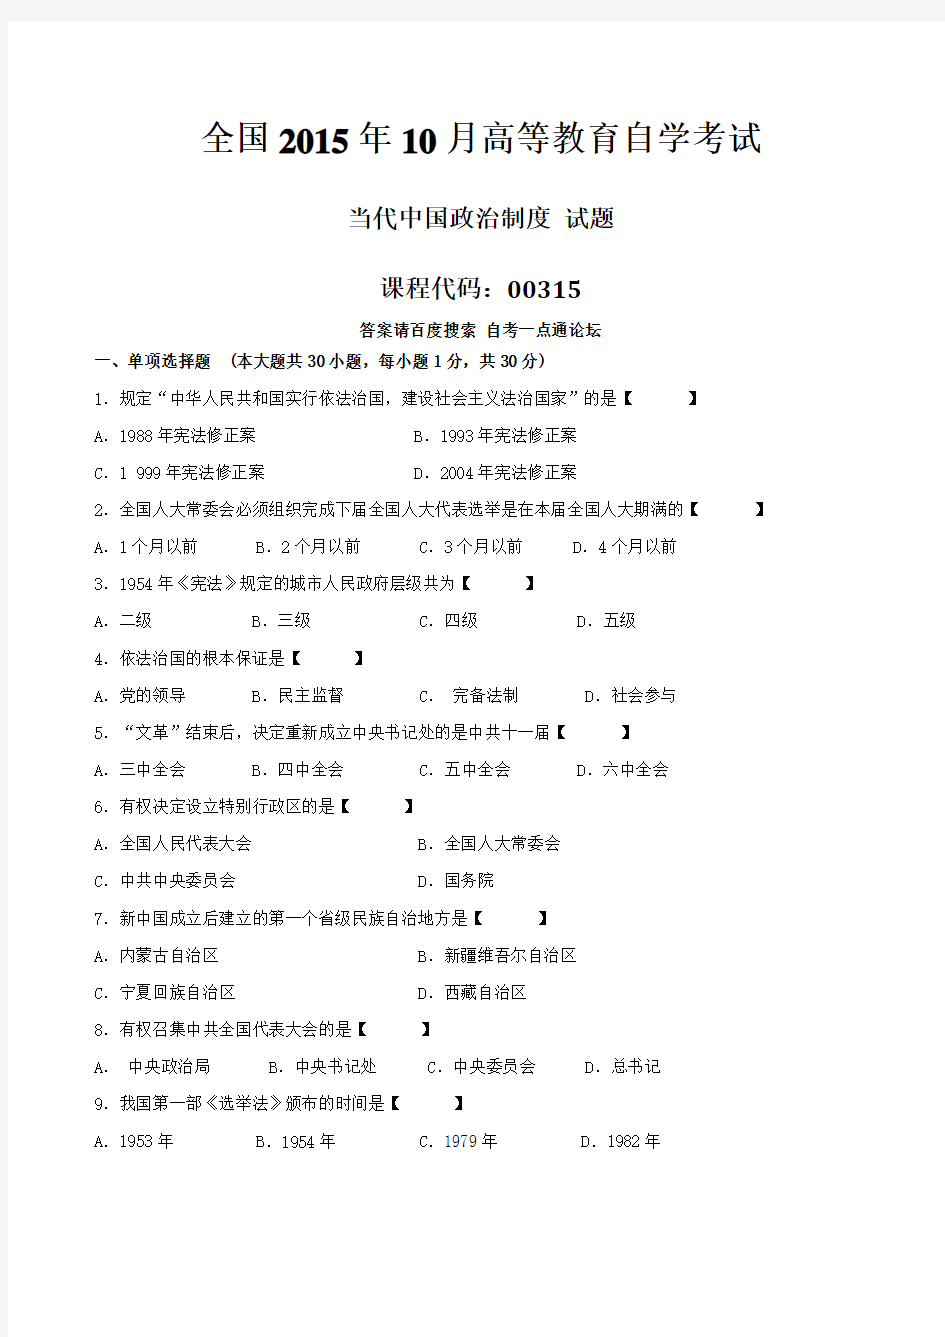 真题版2015年10月自学考试00315《当代中国政治制度》历年真题